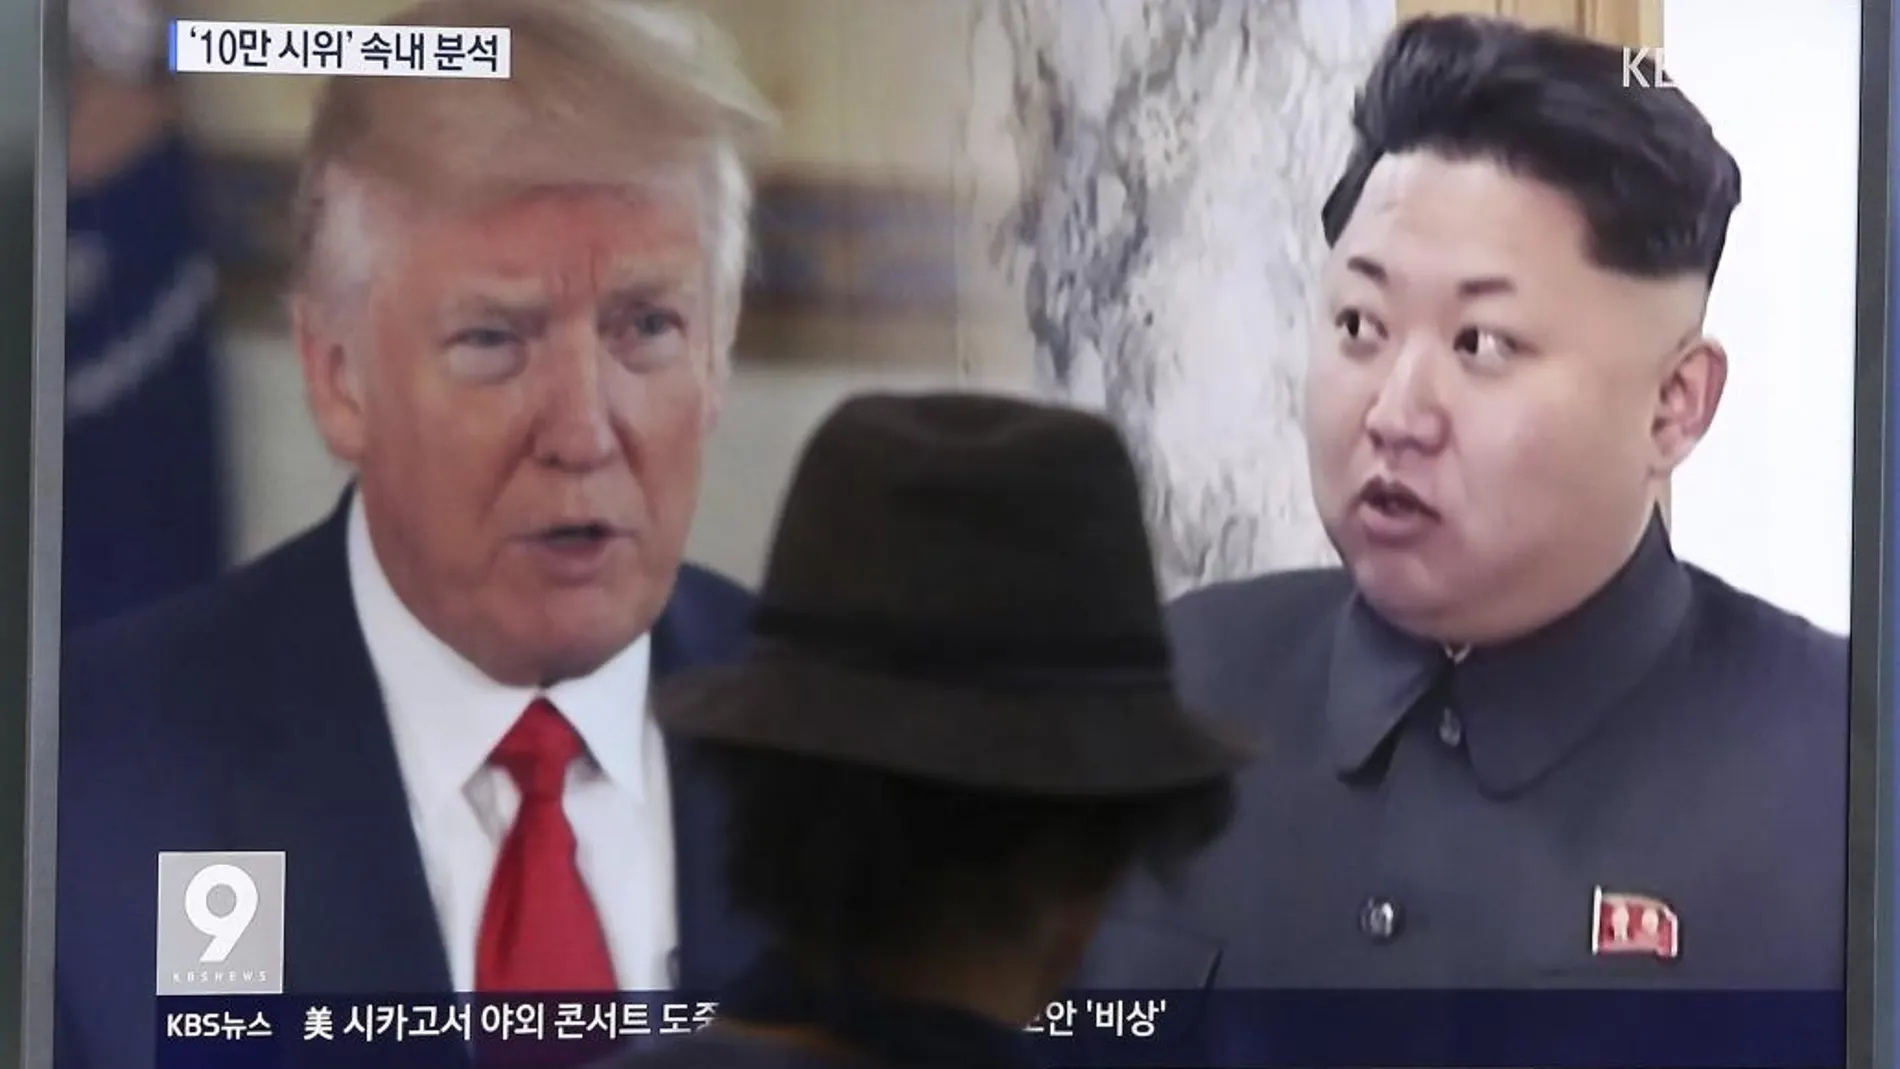 Un hombre observa una pantalla de televisión que muestra al Trump y a Kim Jong Un